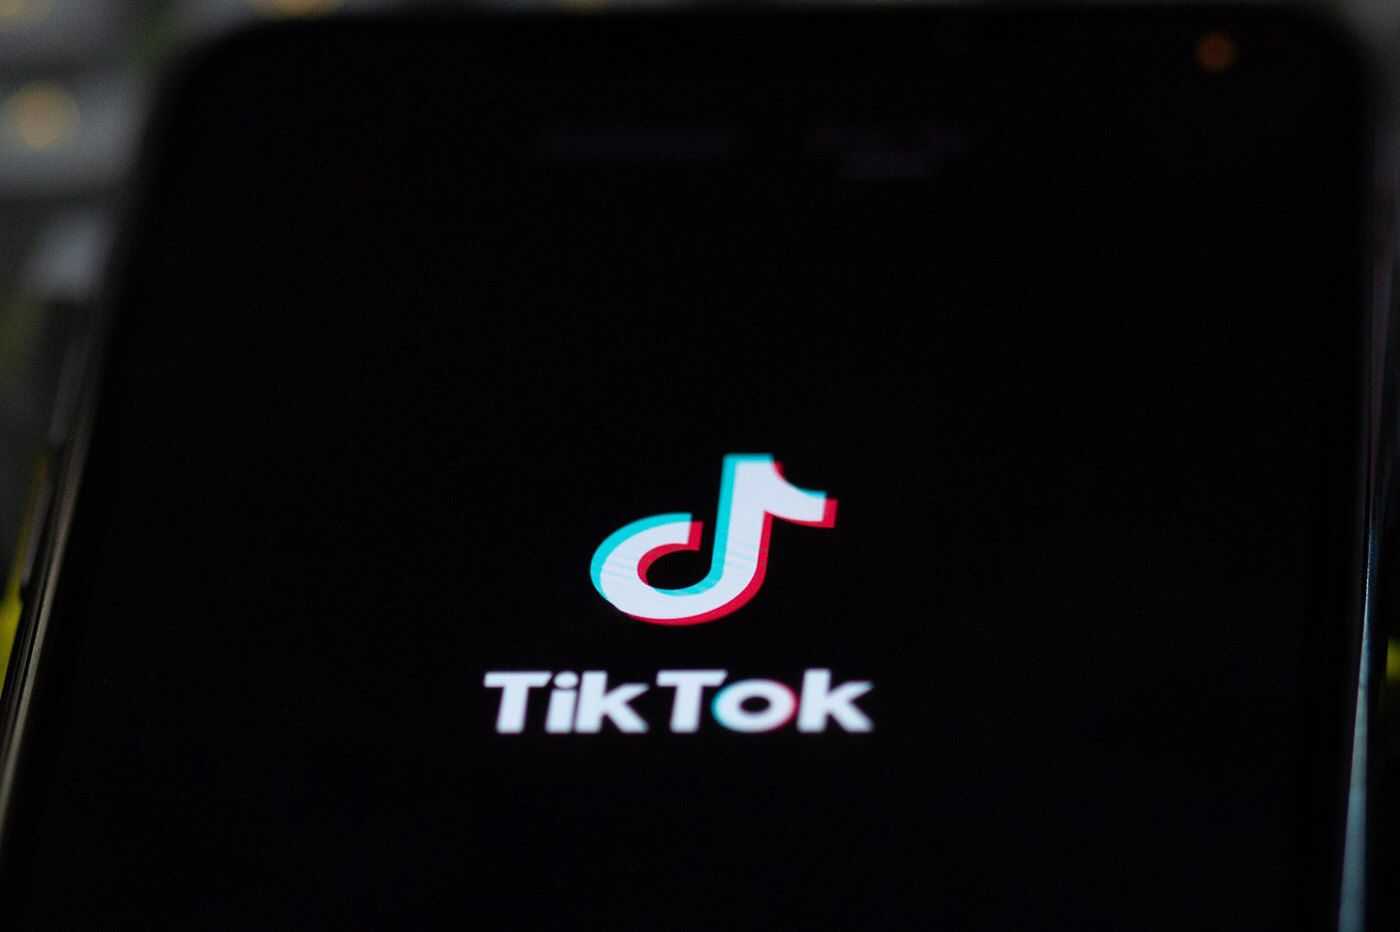 How to Watch TikTok On TV - 3 Simple Way